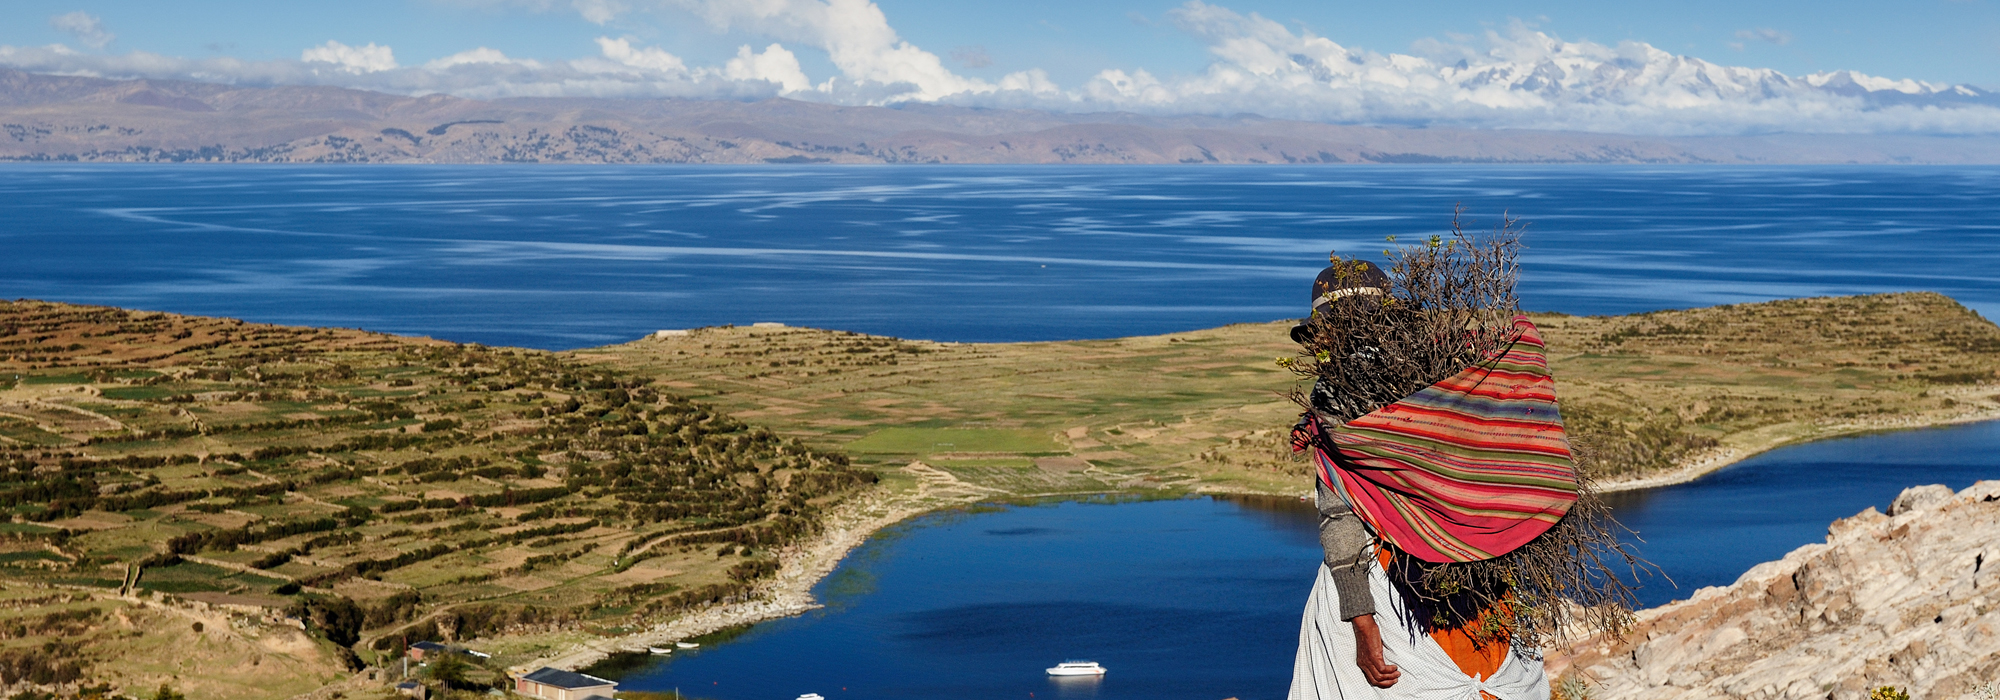 Isla del Sol on Lake Titicaca, Bolivia